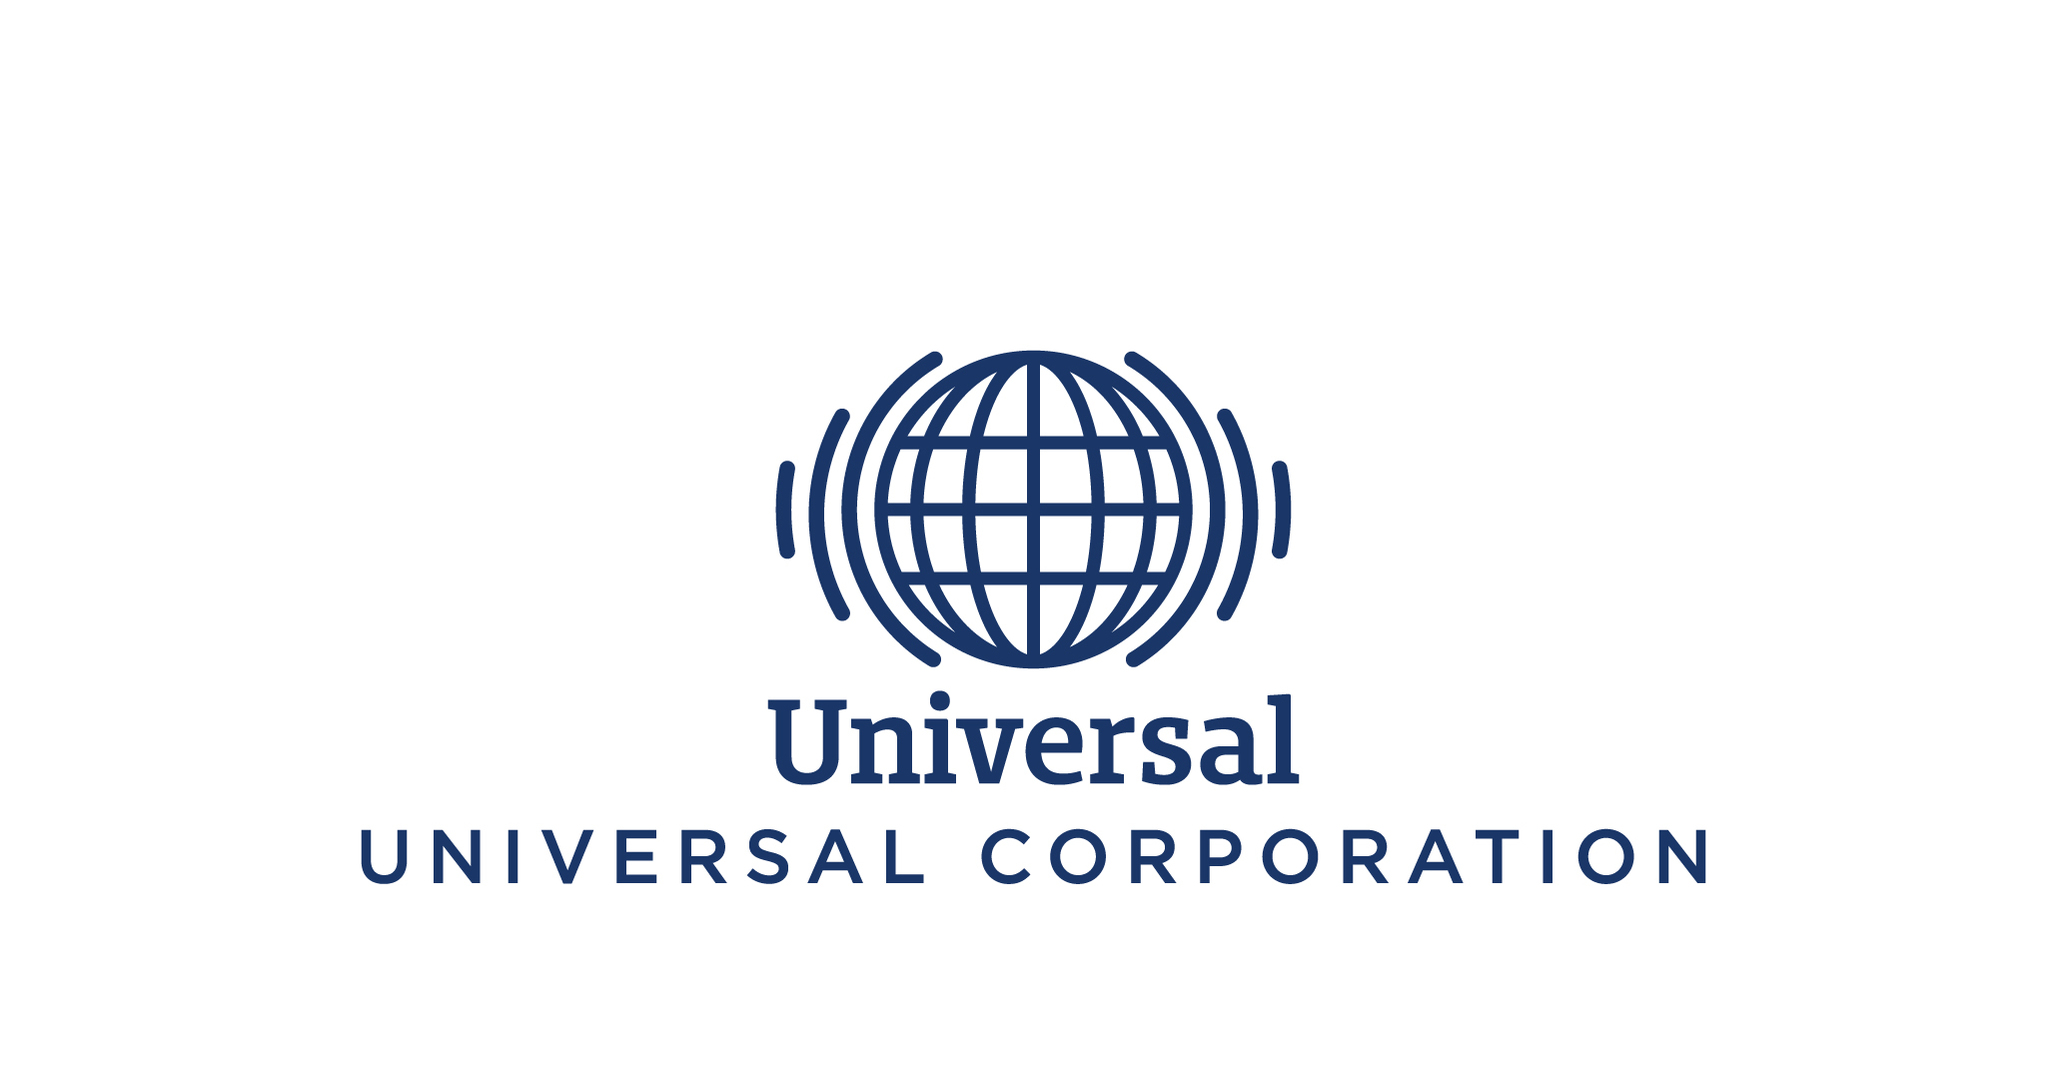  Universal Corporation Announces Quarterly Dividend 